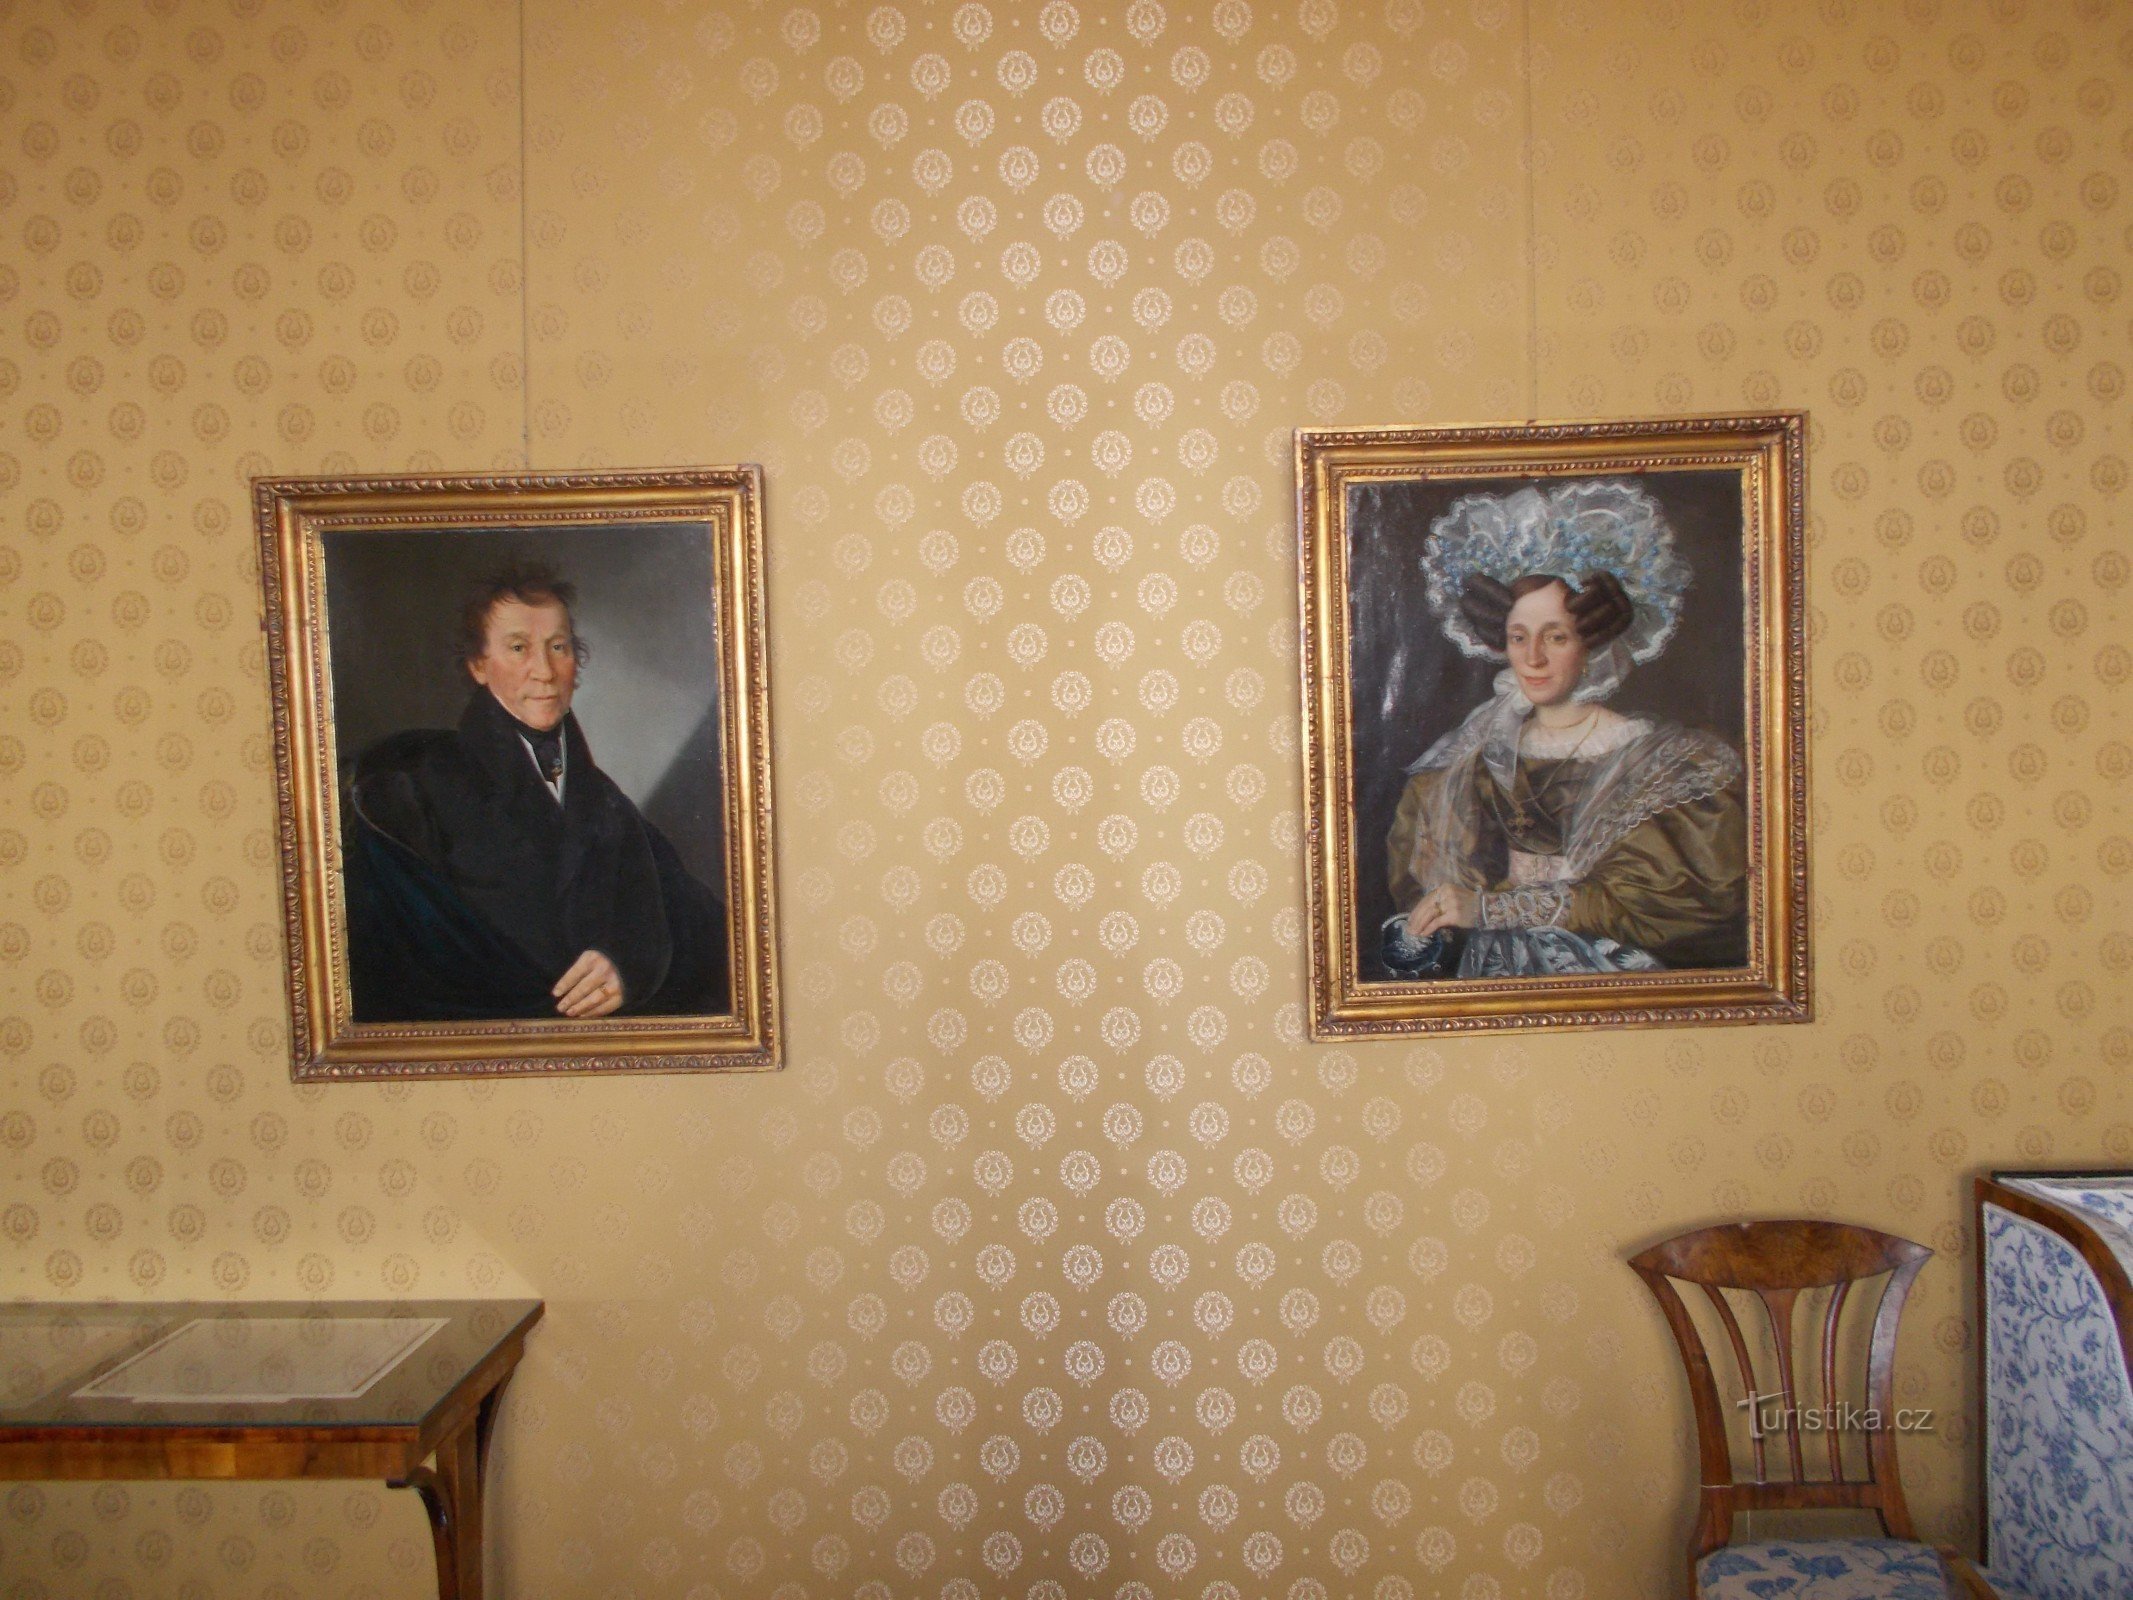 Porträts der Eltern von Bedřich Smetana